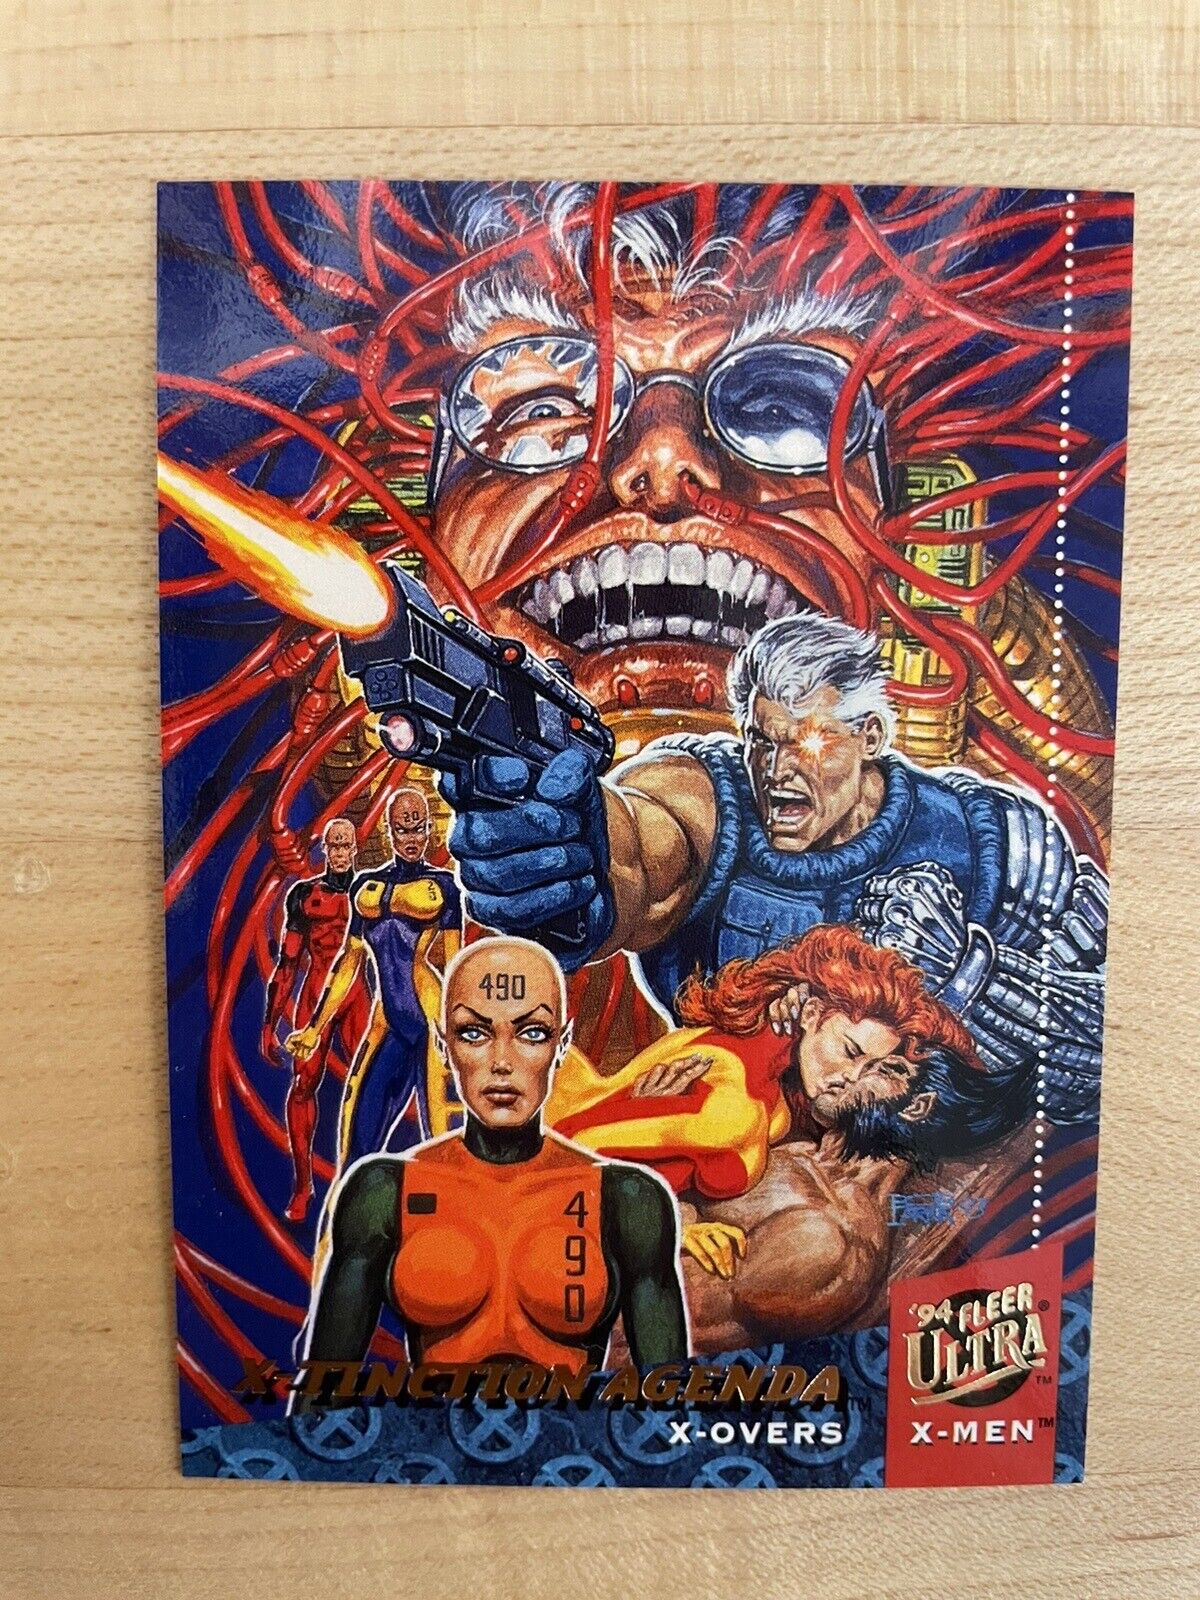 1994 Fleer Ultra Marvel X-Men X-Tinction Agenda X-Over Card